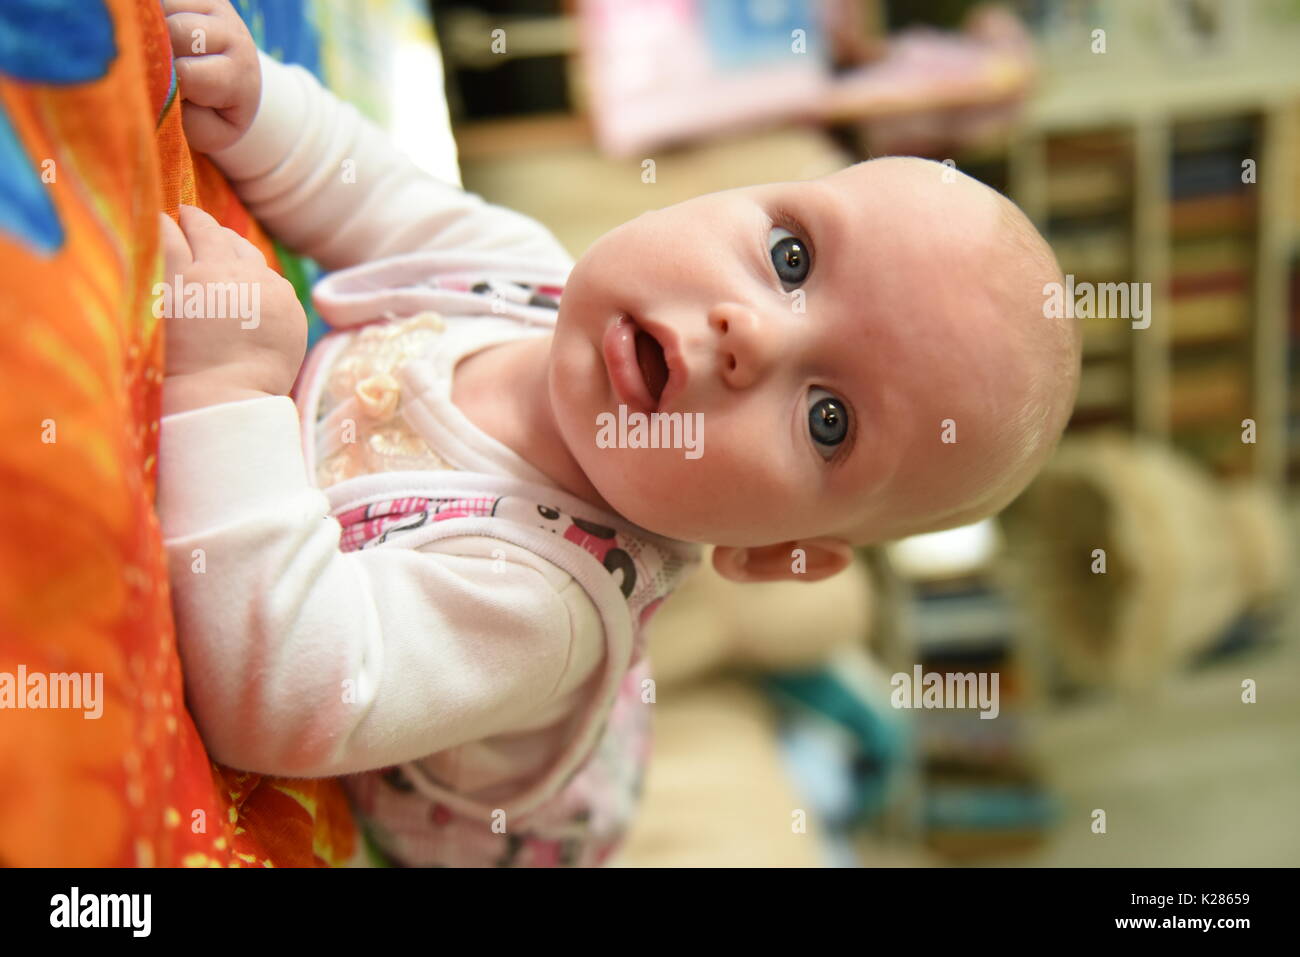 cute dreamly little baby girl portrait Stock Photo